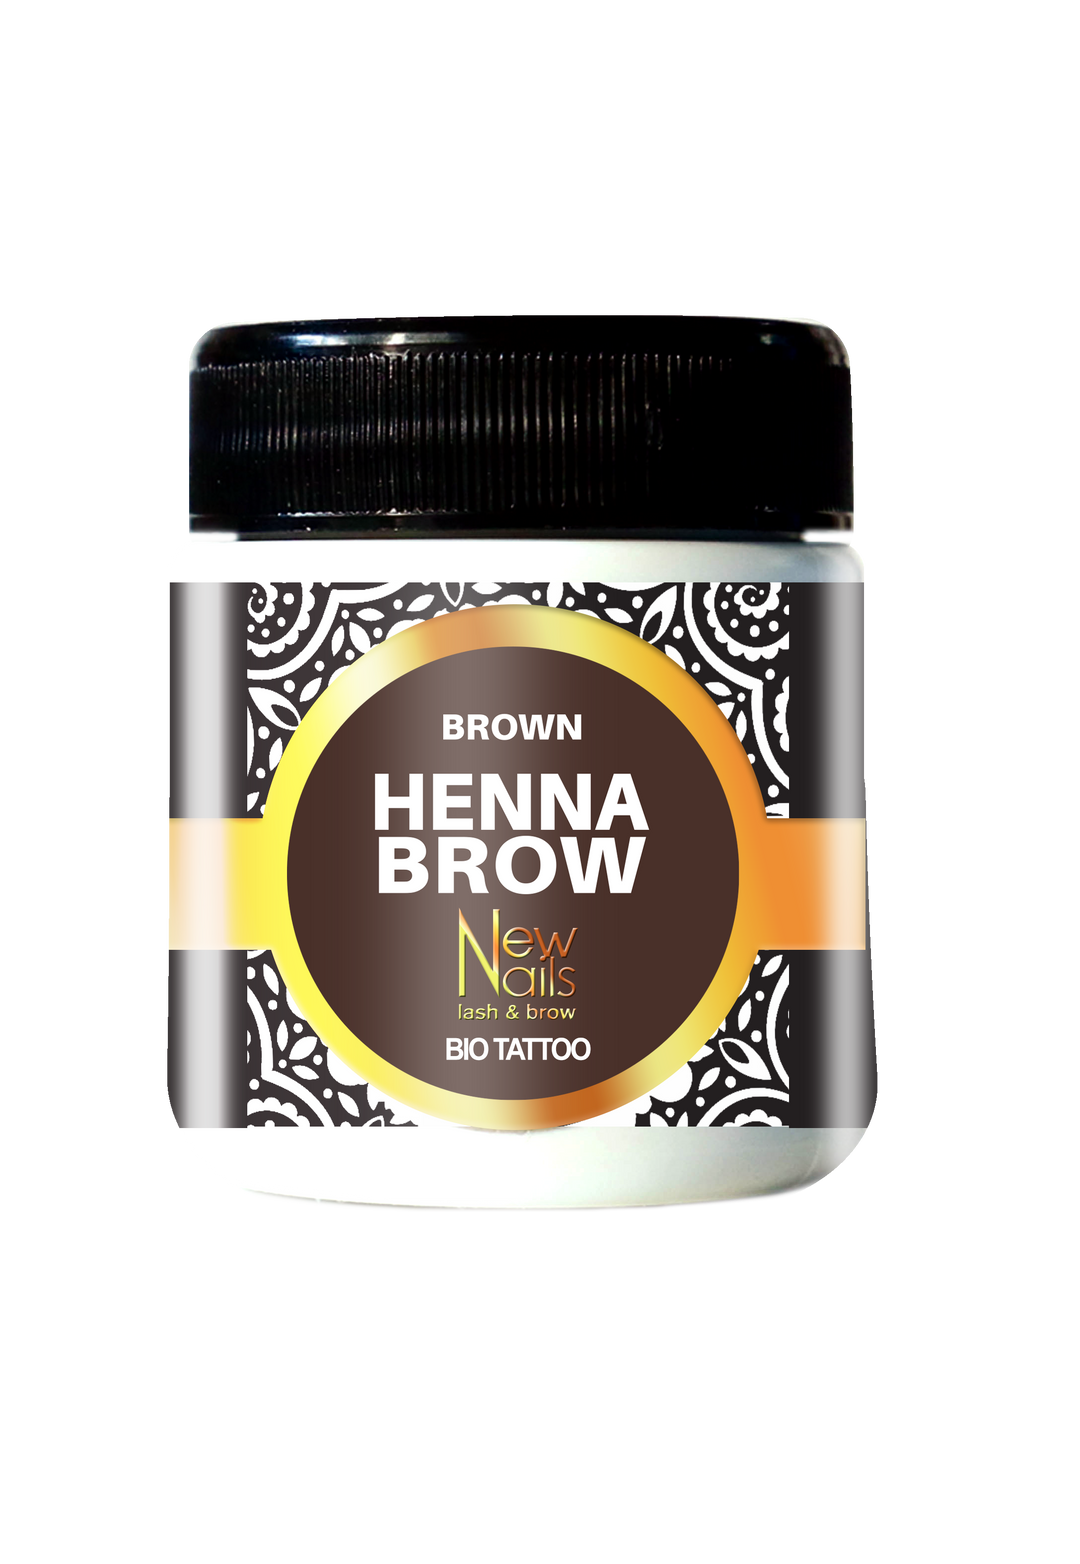 HENNA BROW - Brown - Brown